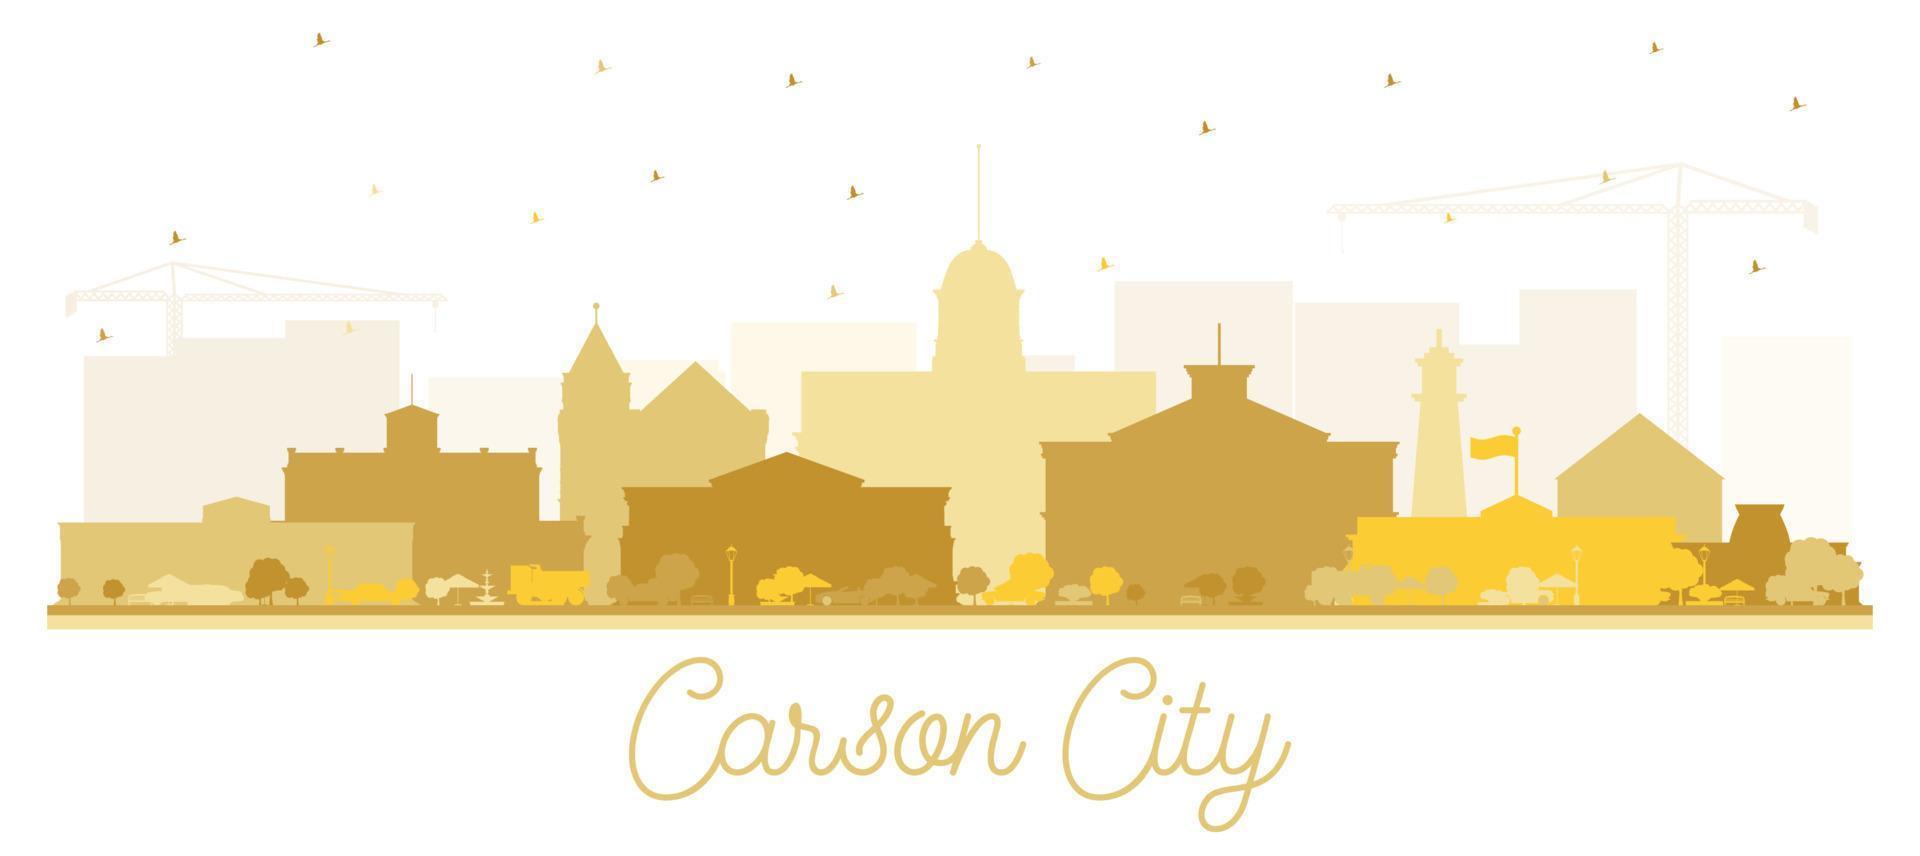 silhueta do horizonte da cidade de nevada carson city com edifícios dourados isolados no branco. vetor